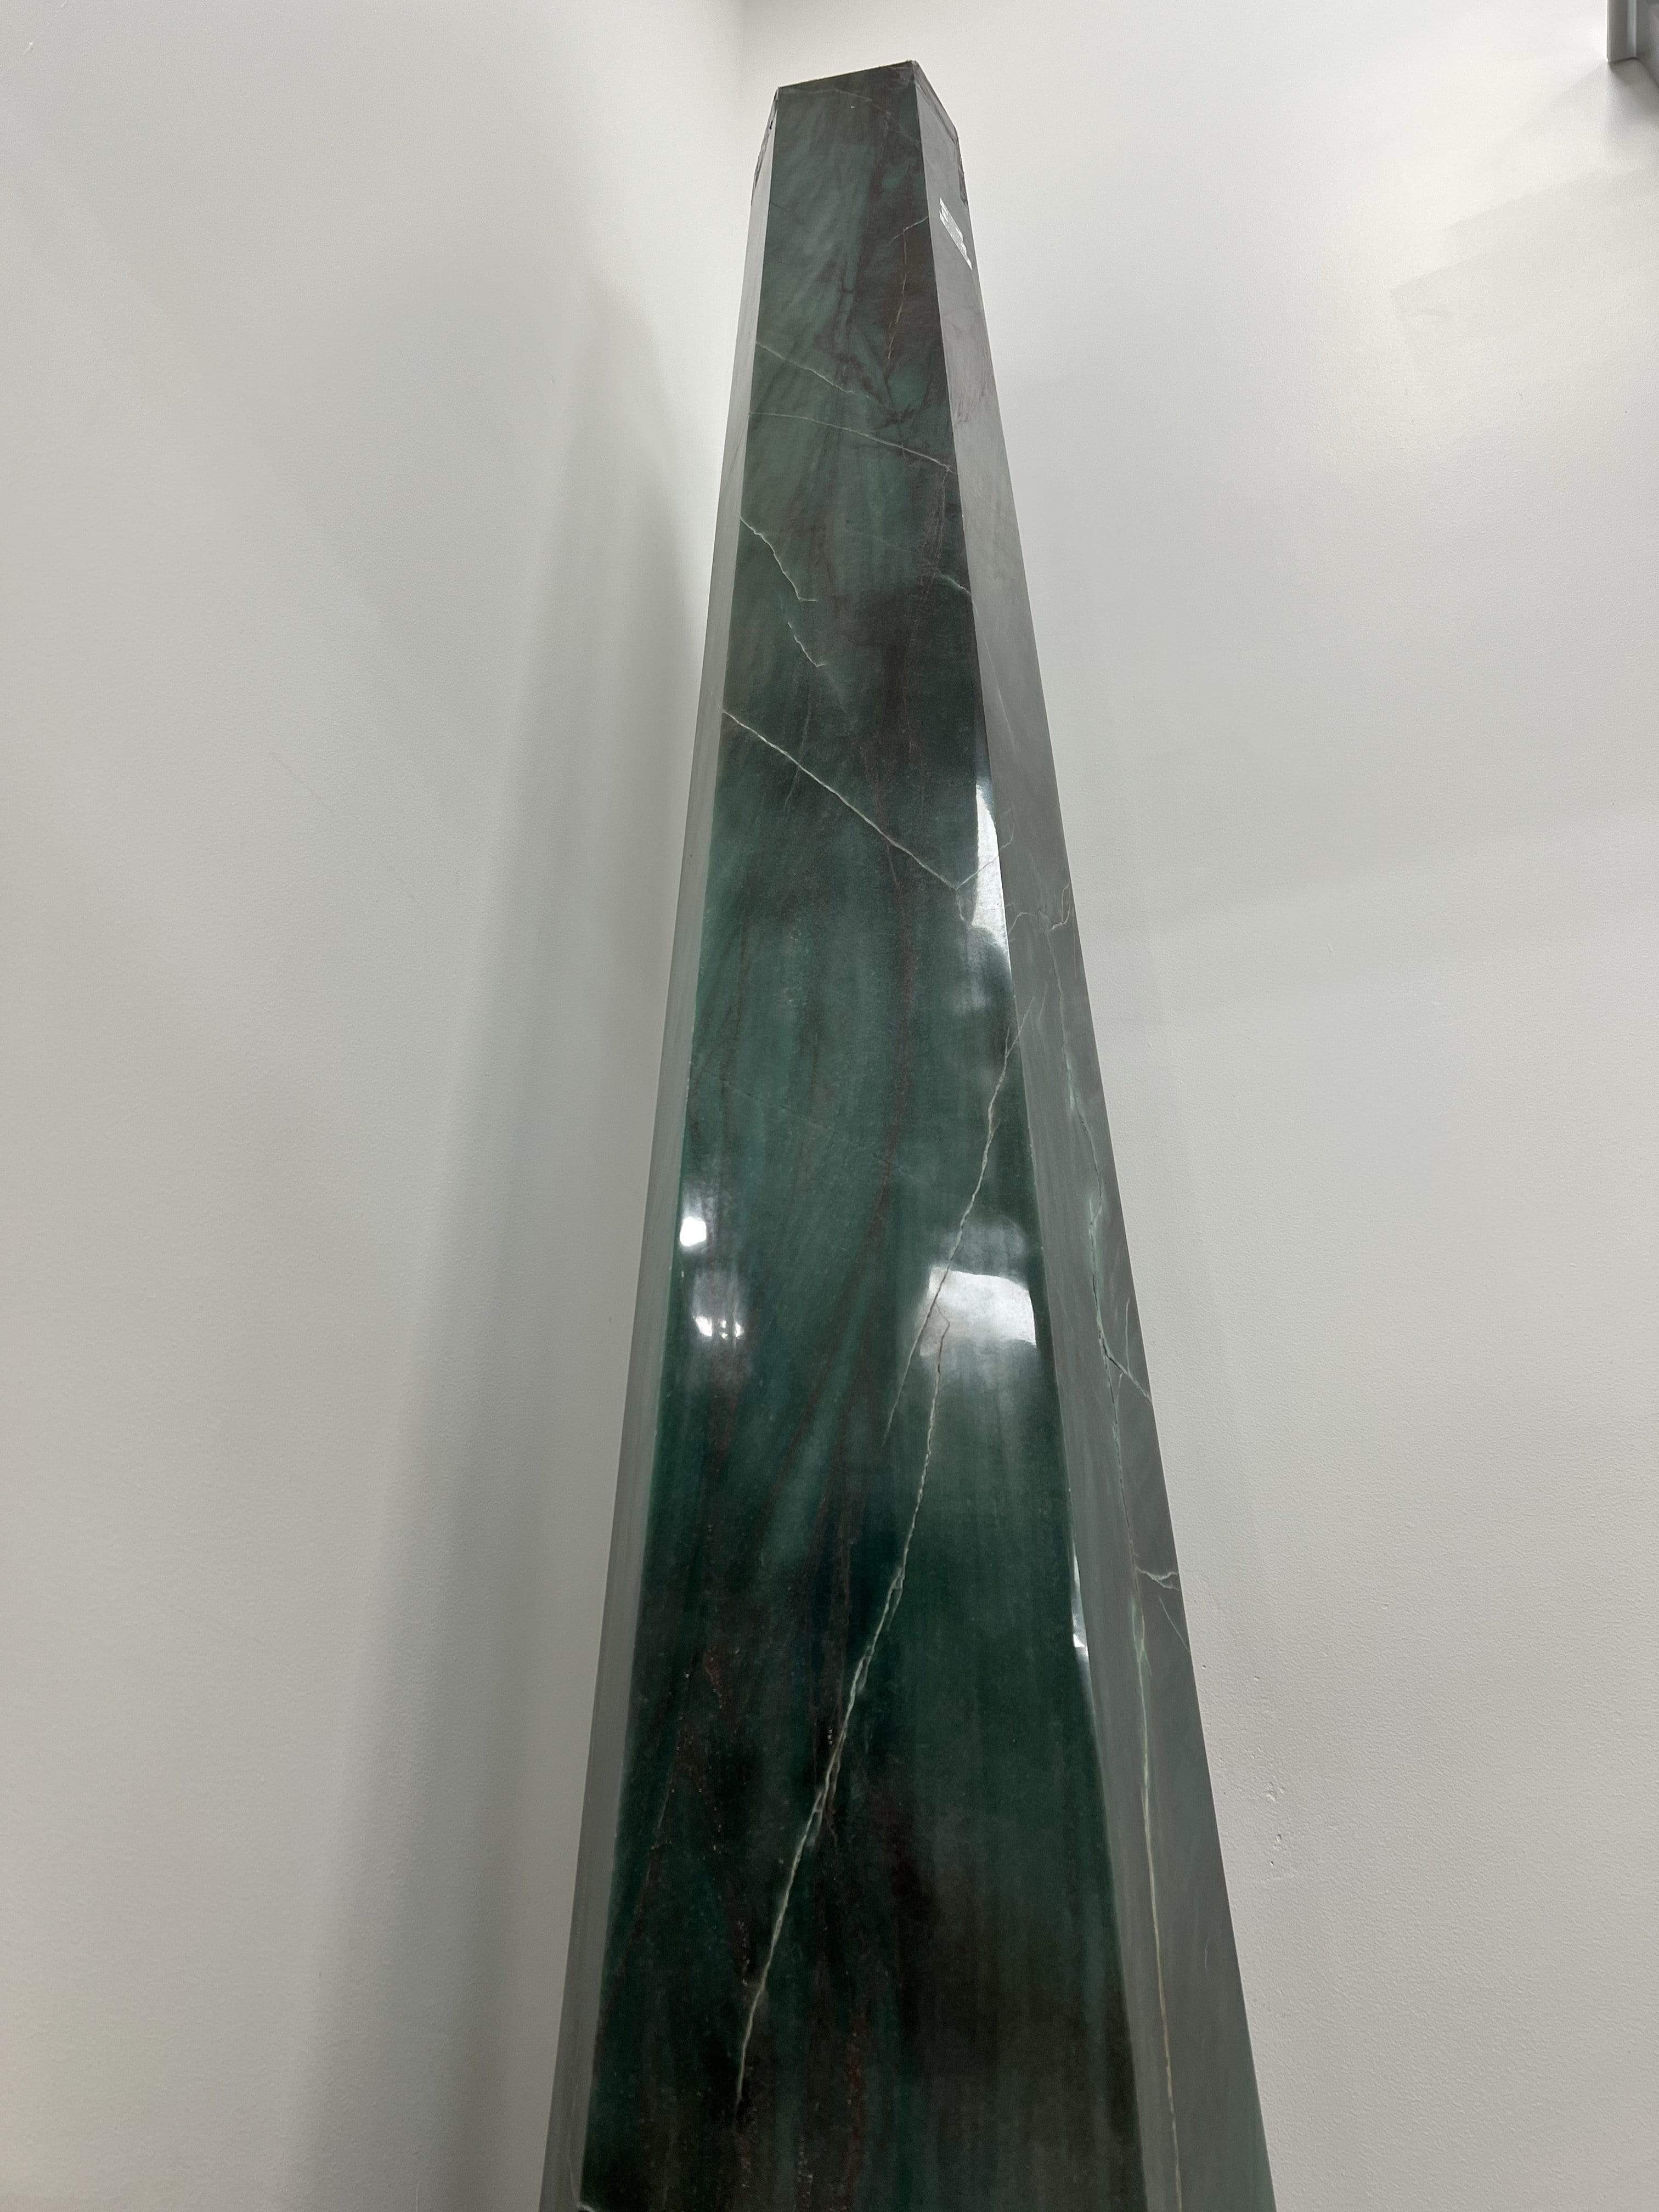 Kalifano Aventurine Obelisk from Brazil - 400 lbs AV60000.001